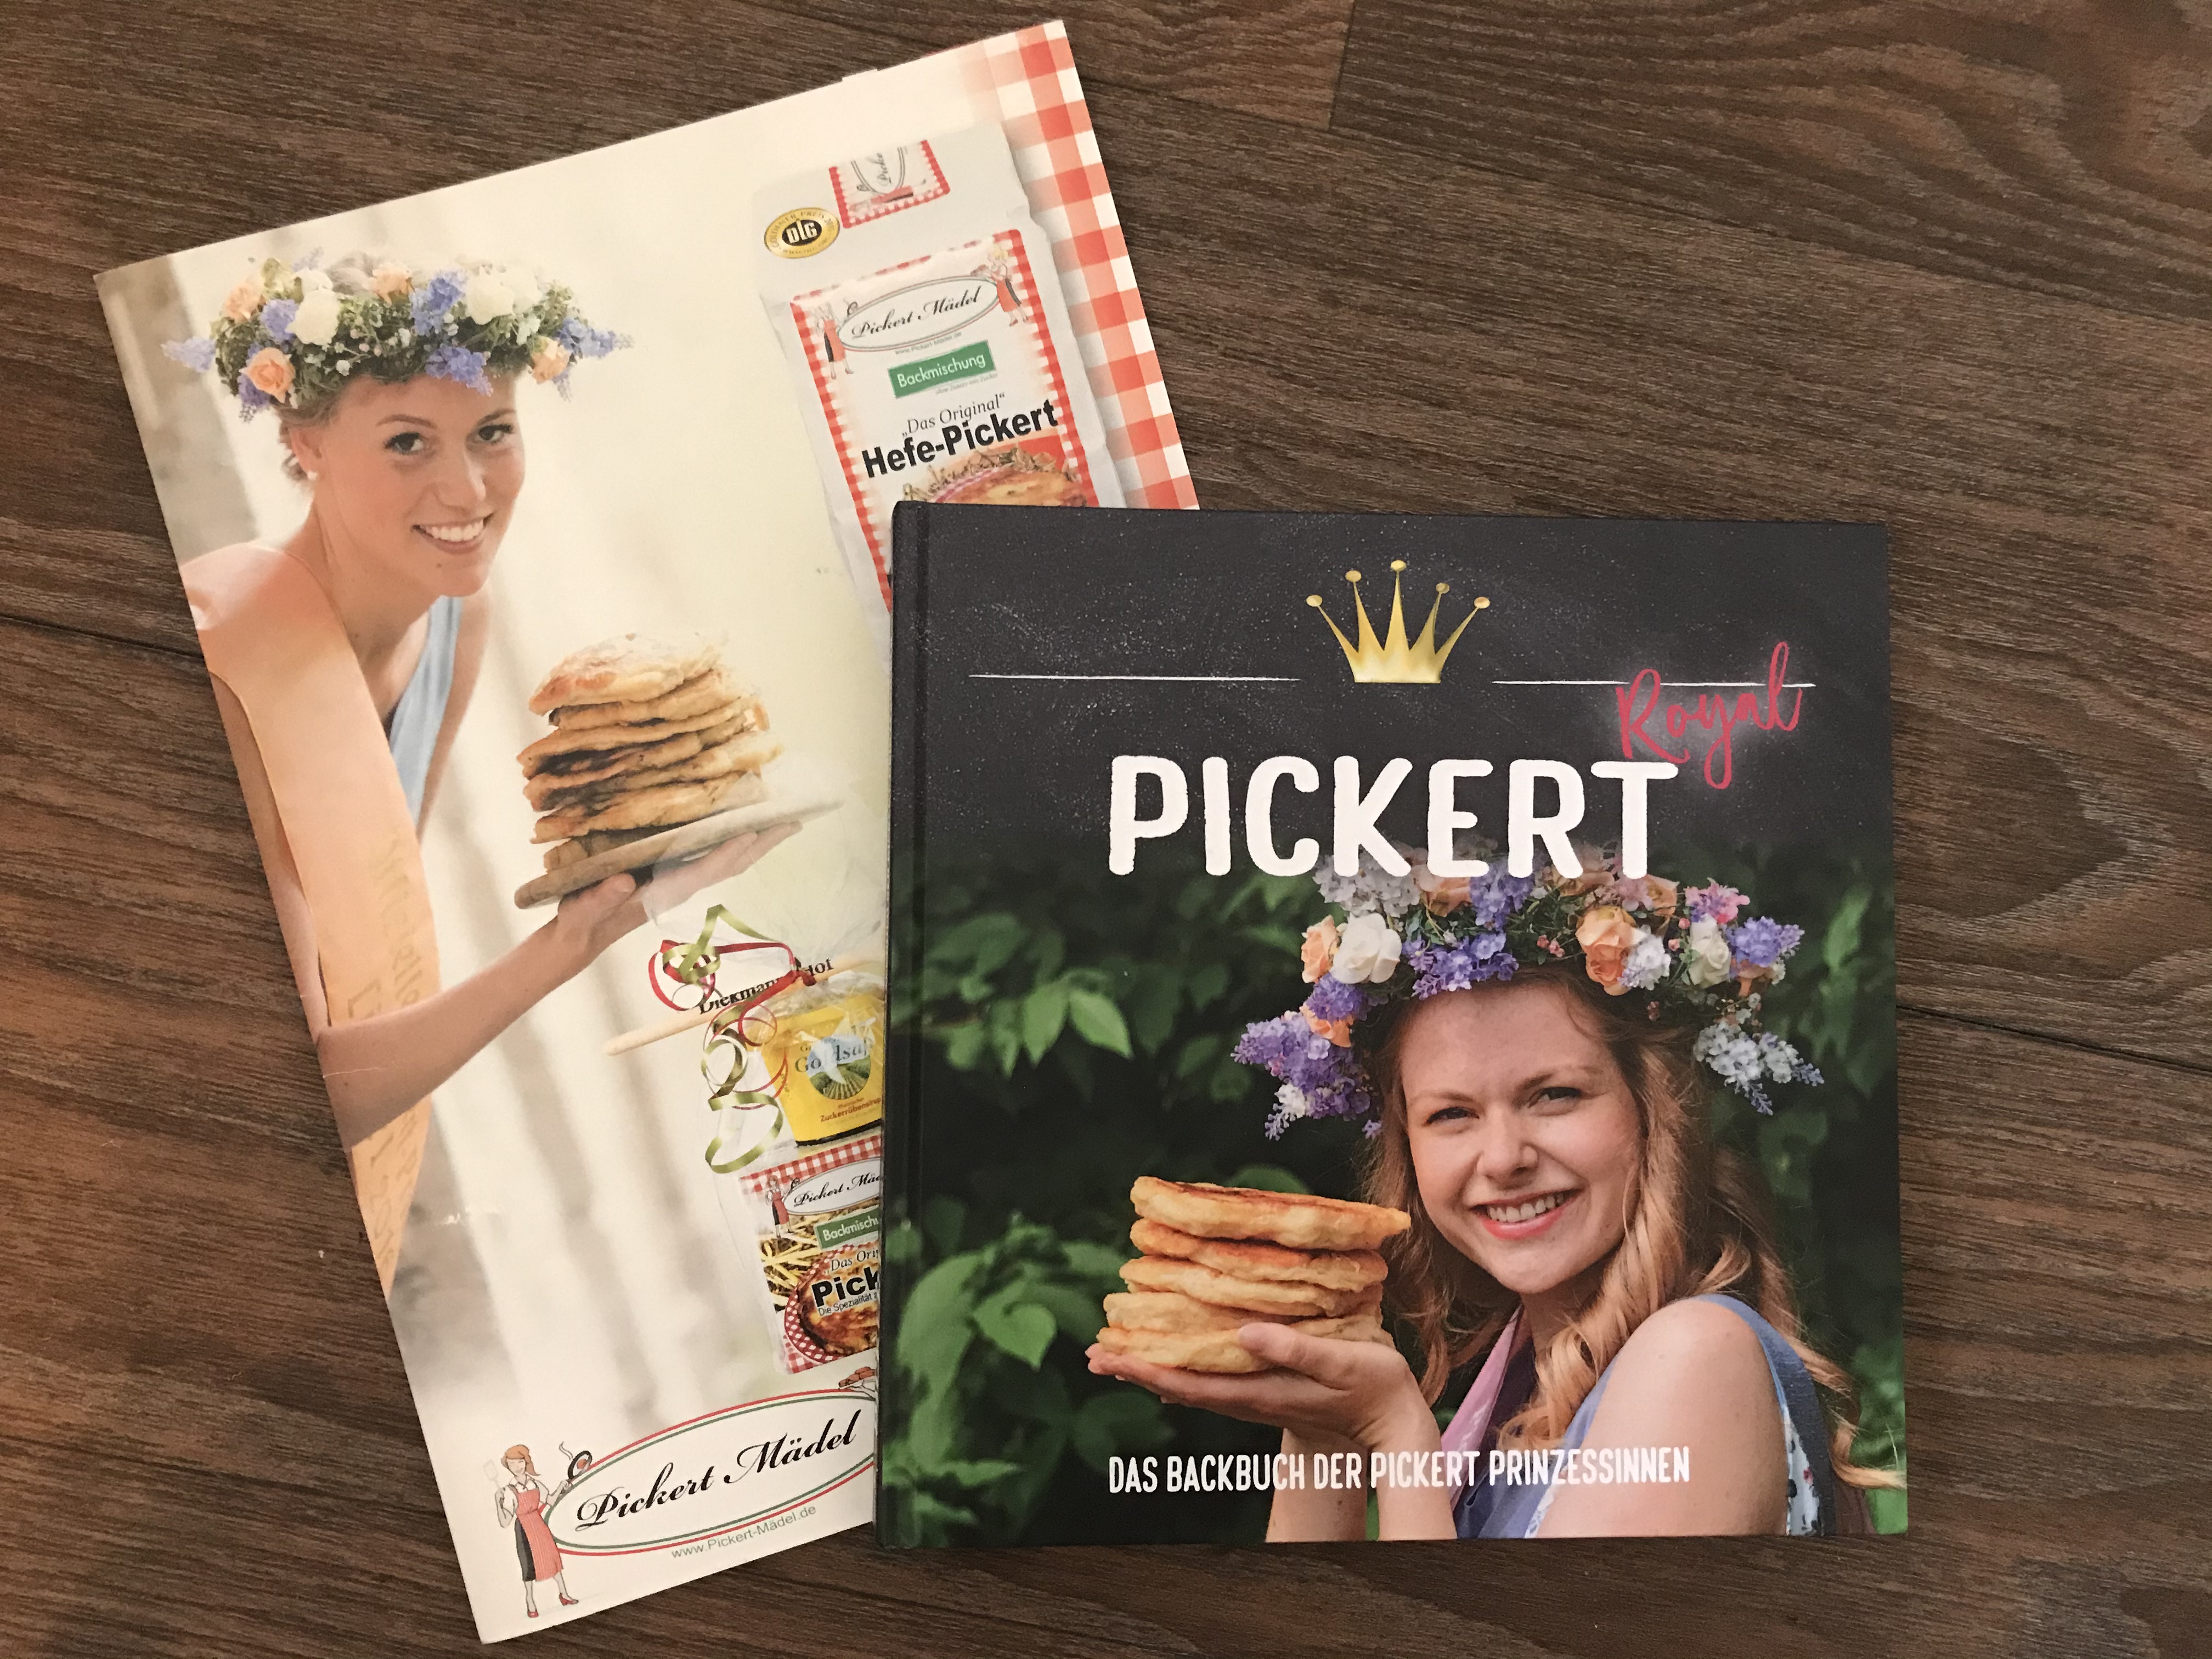 Zu sehen ist die Preppemappe von Pickert Mädel sowie das neue Kochbuch Pickert Royale.